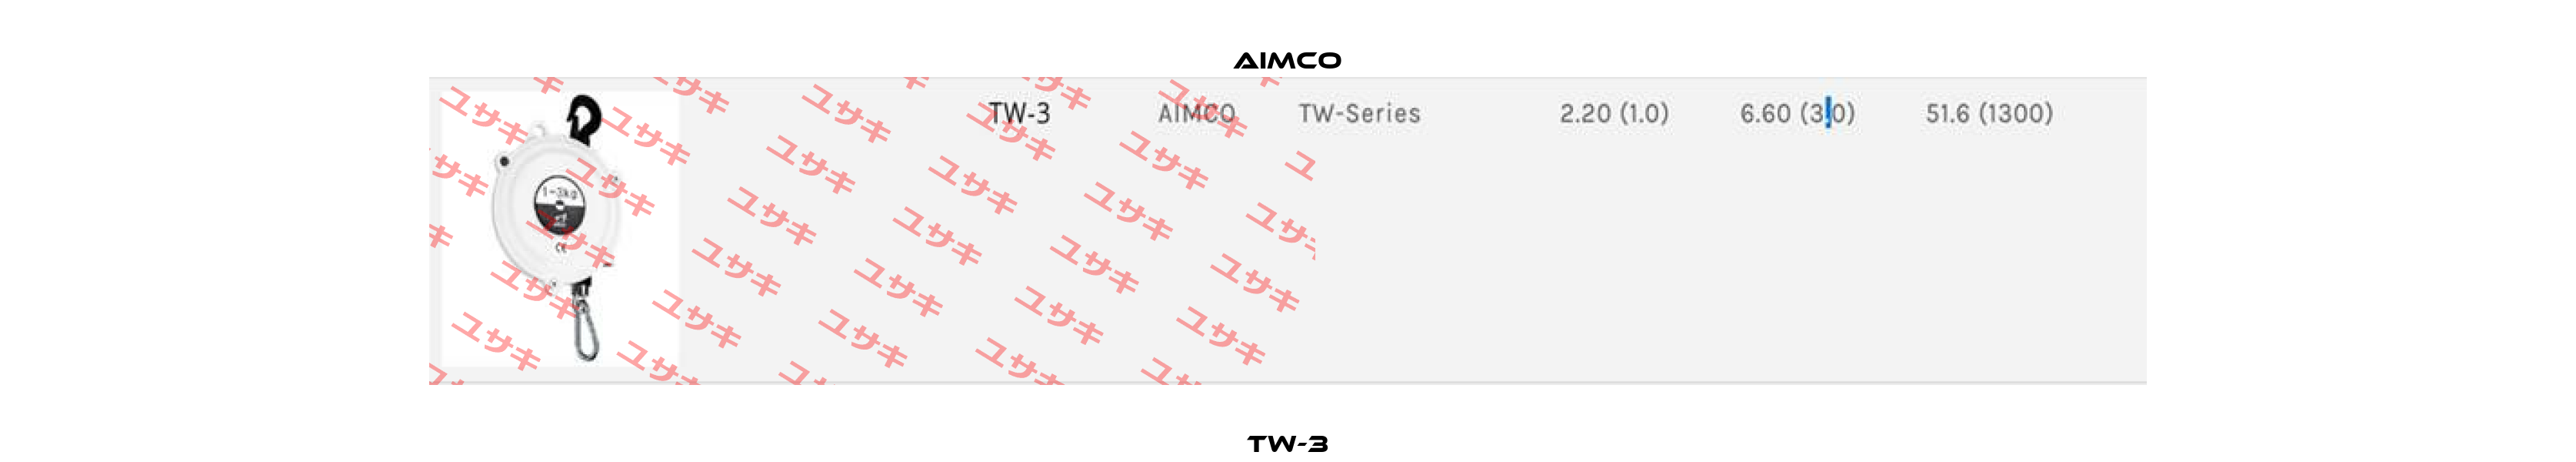 TW-3 AIMCO